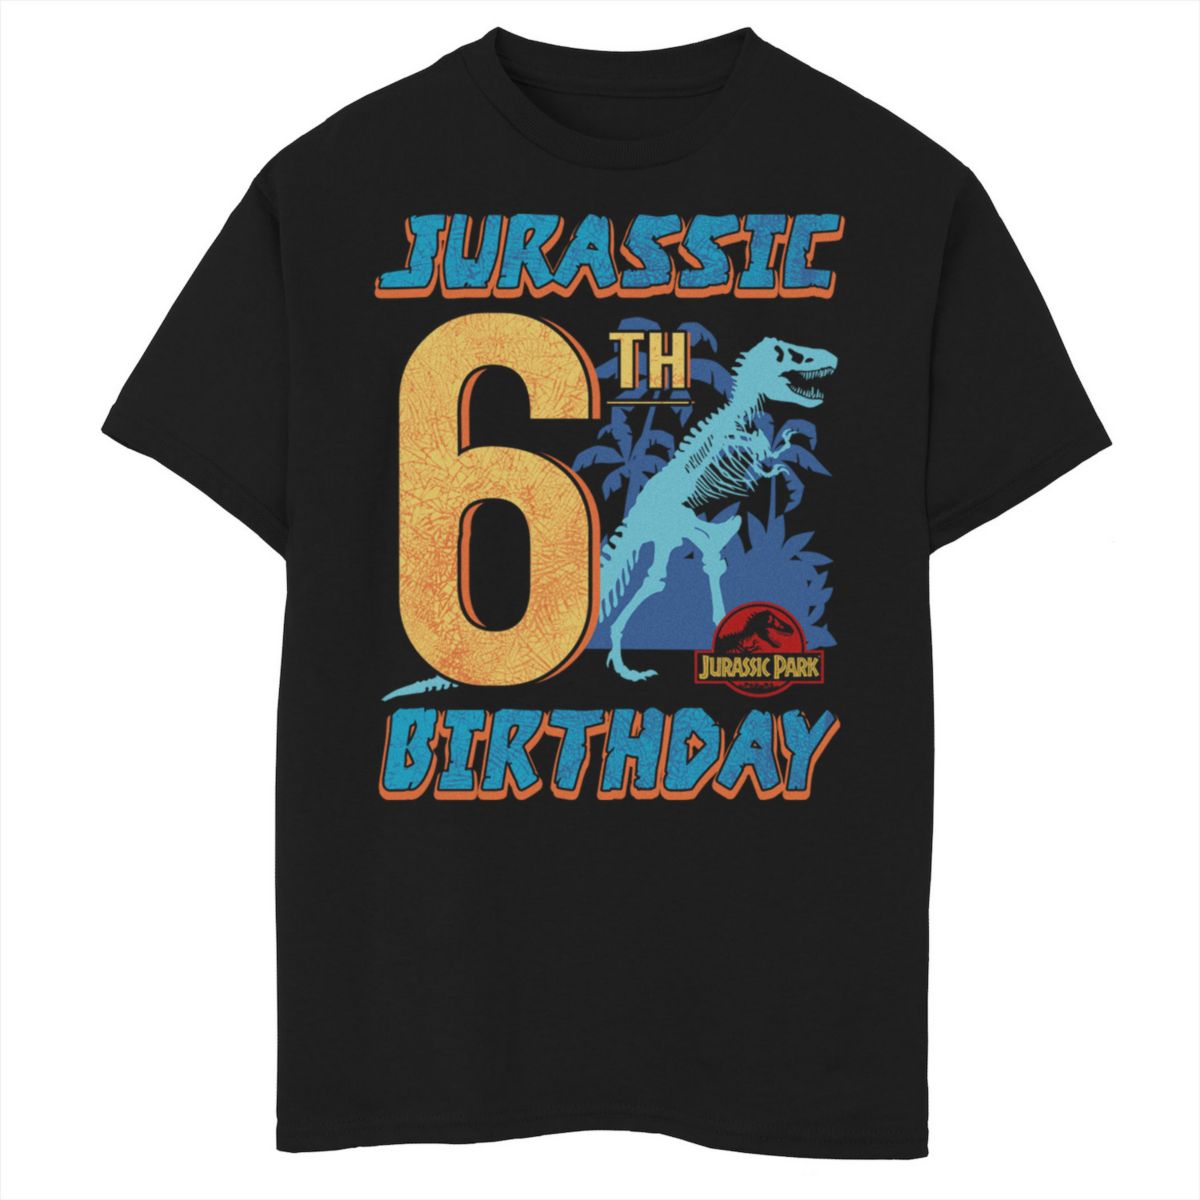 Футболка с рисунком T Rex для мальчиков 8-20 Jurassic Park 6th Birthday Jurassic Park